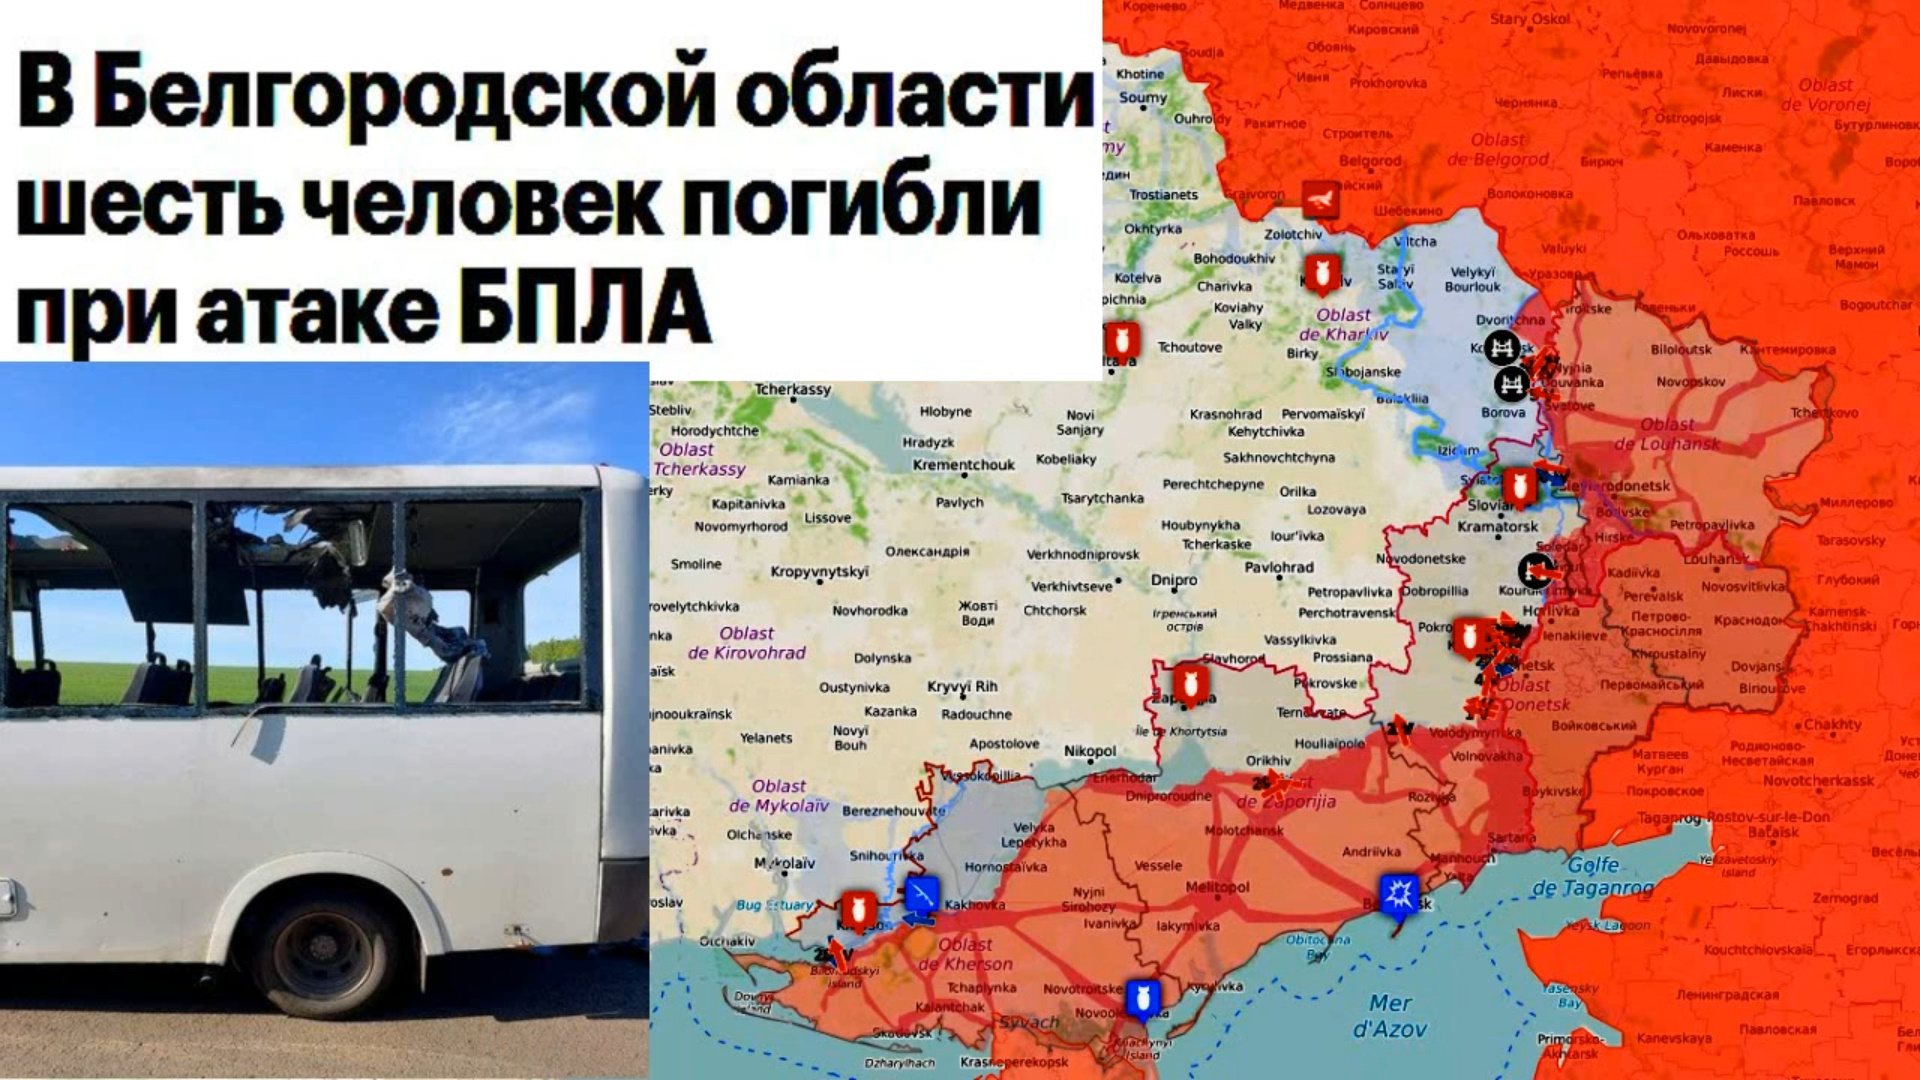 Карта боевых действий. Военное преступление Киева-в Белгородской области погибли люди при атаке БПЛА